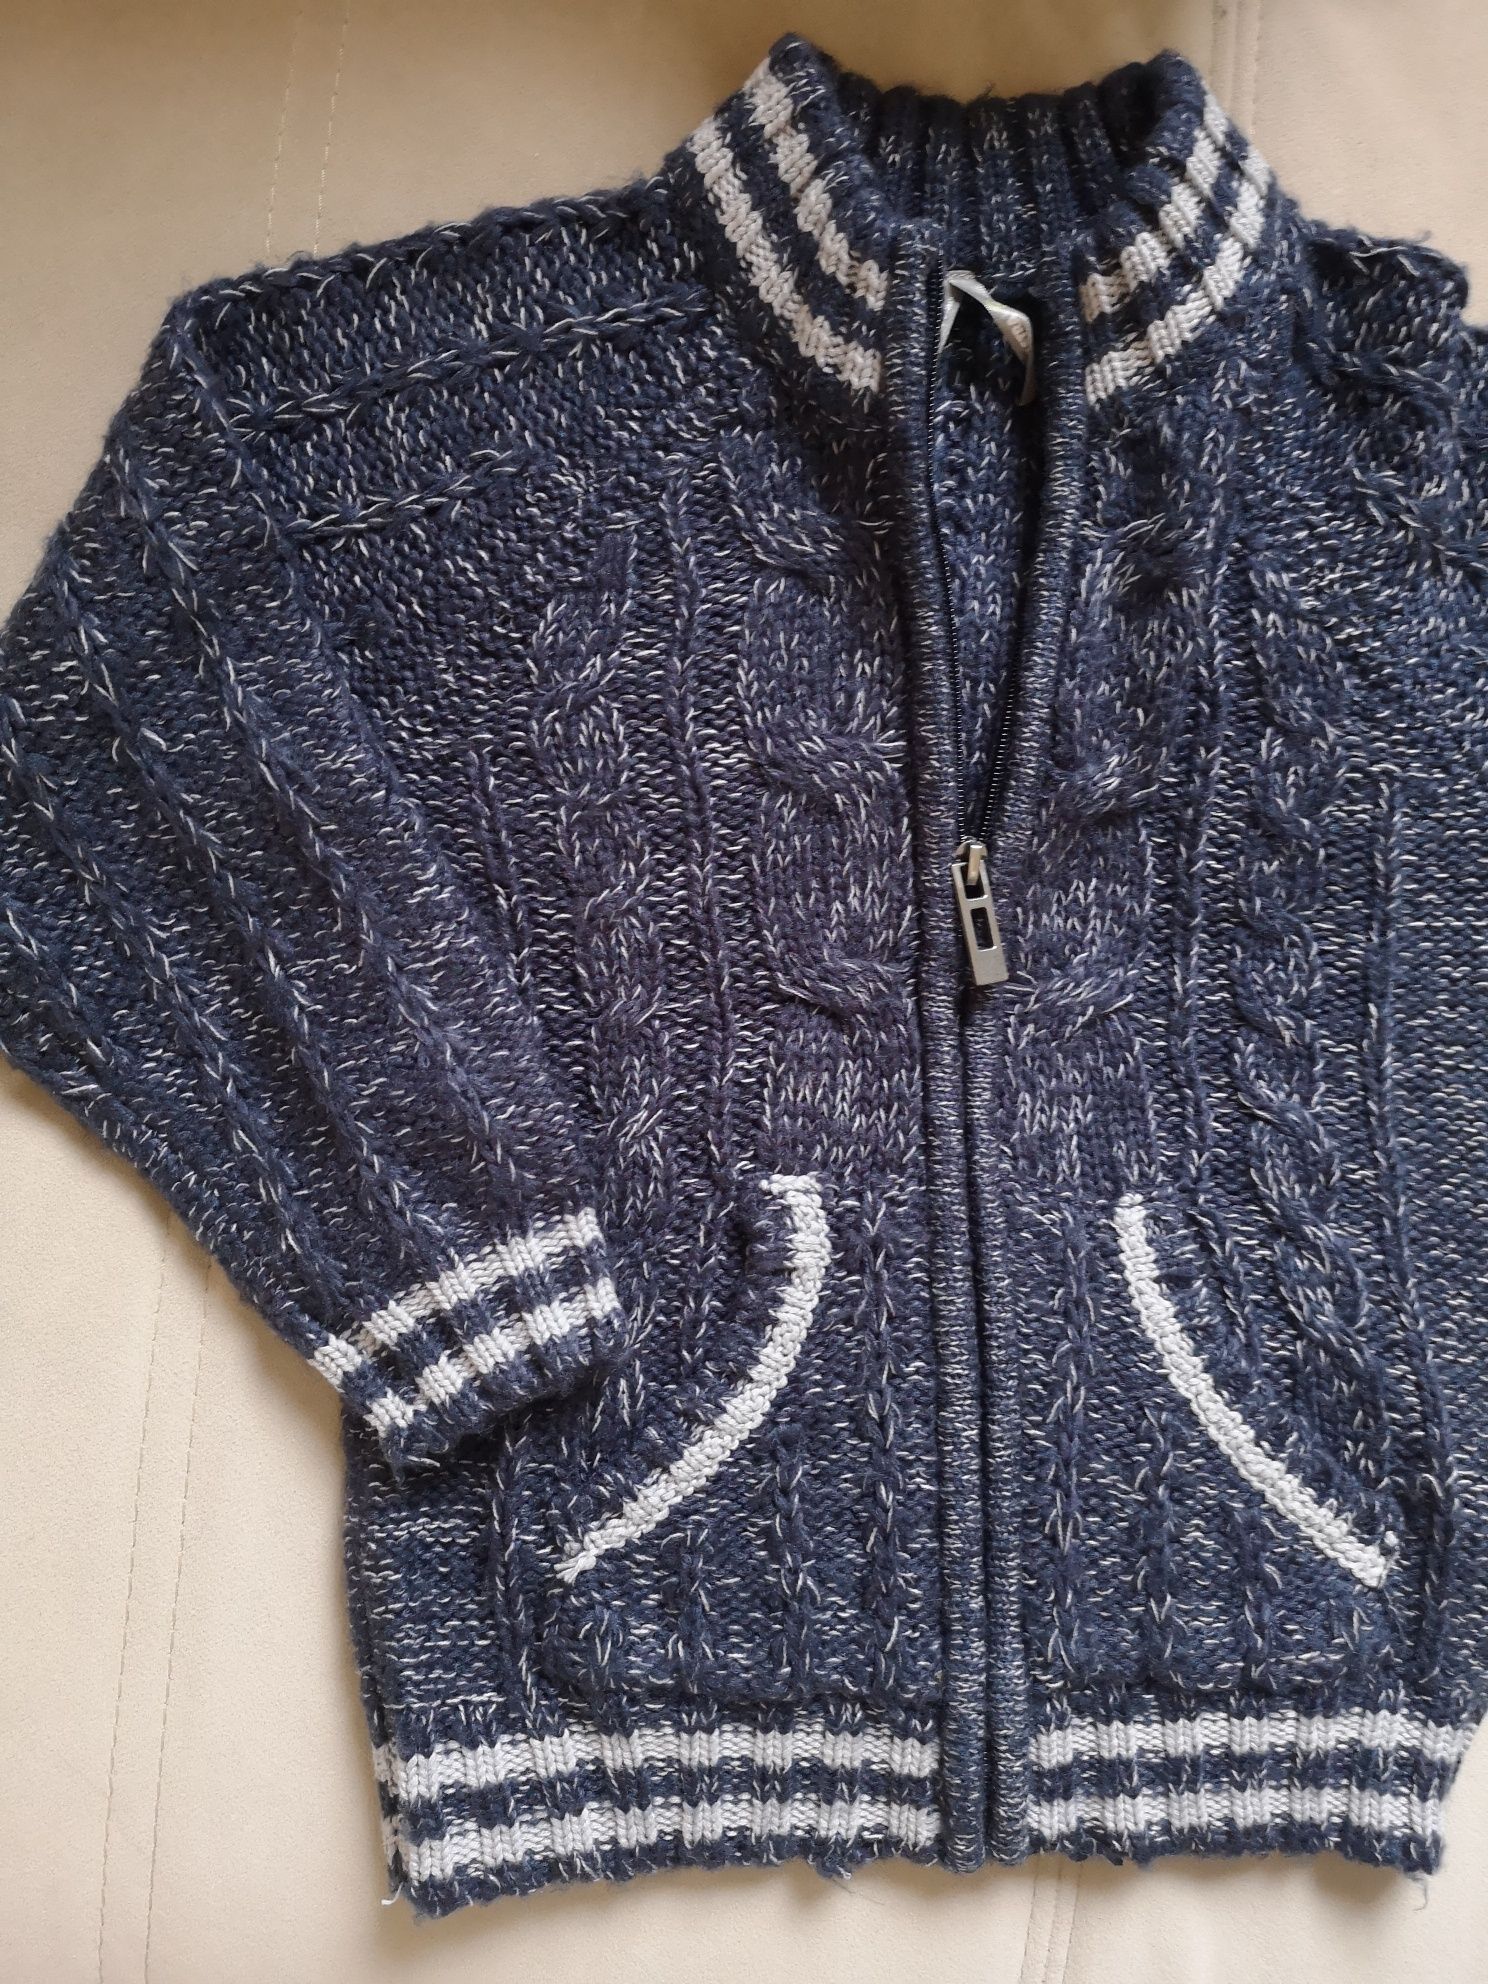 Swetr, sweterek chłopięcy 4-5 lat /110-116cm/bardzo miękki i przyjemny